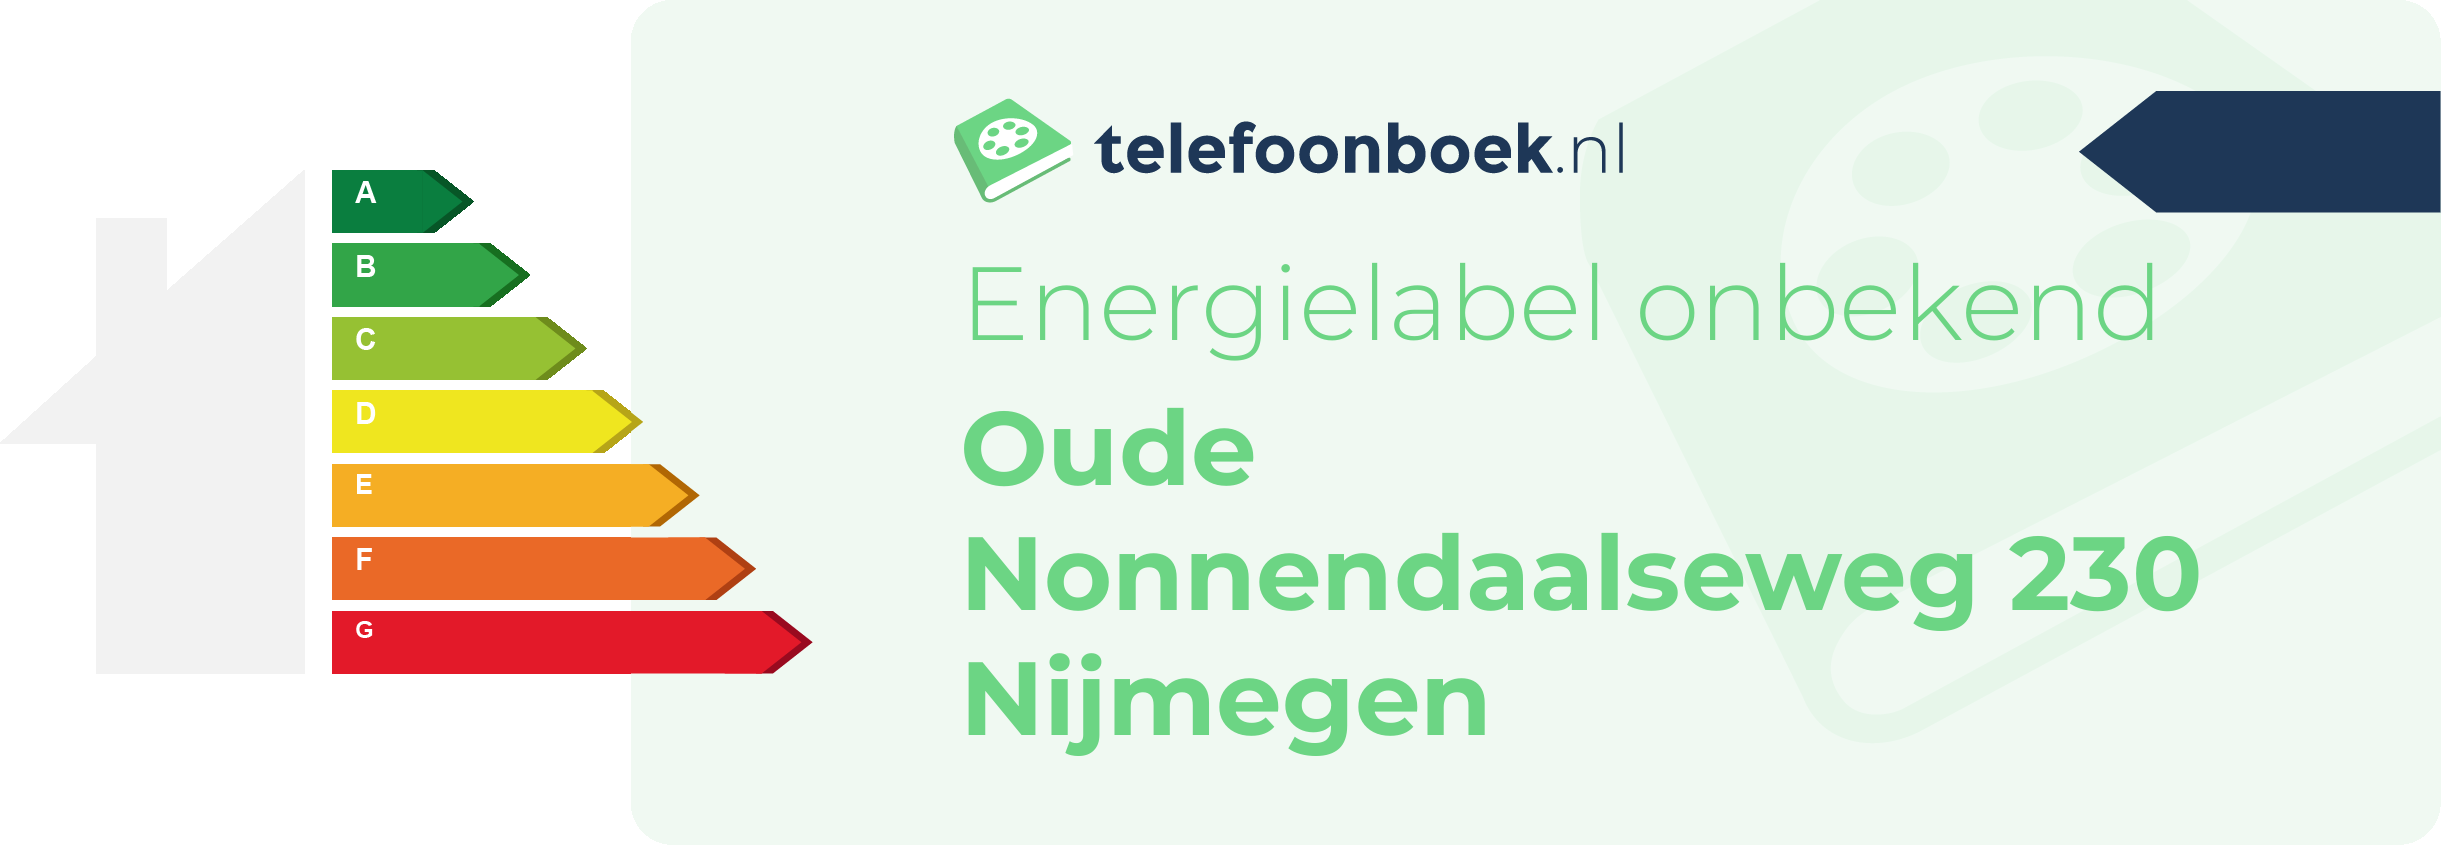 Energielabel Oude Nonnendaalseweg 230 Nijmegen